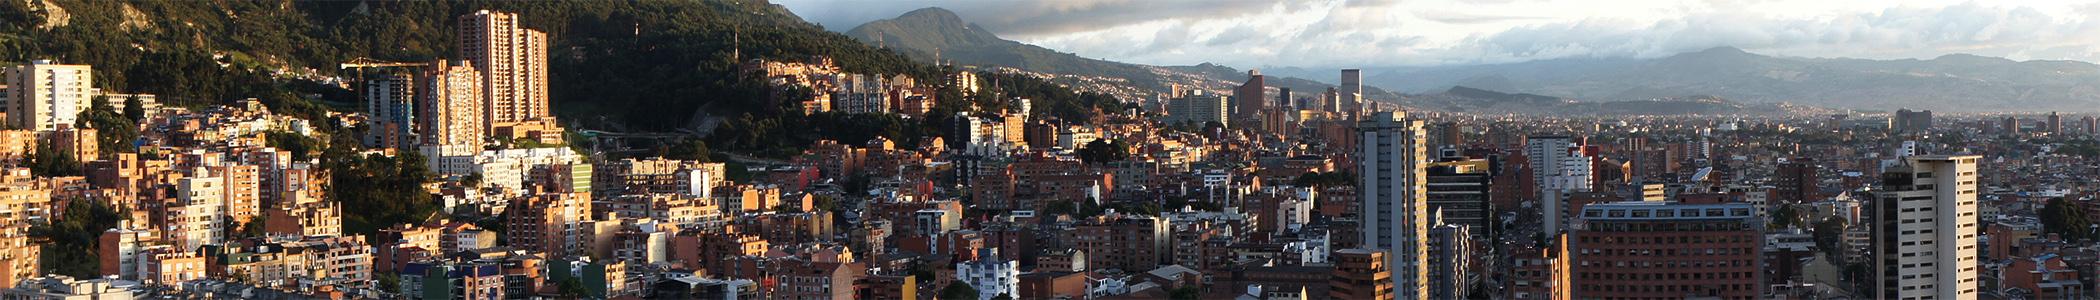 Banner image for Bogotá on GigsGuide